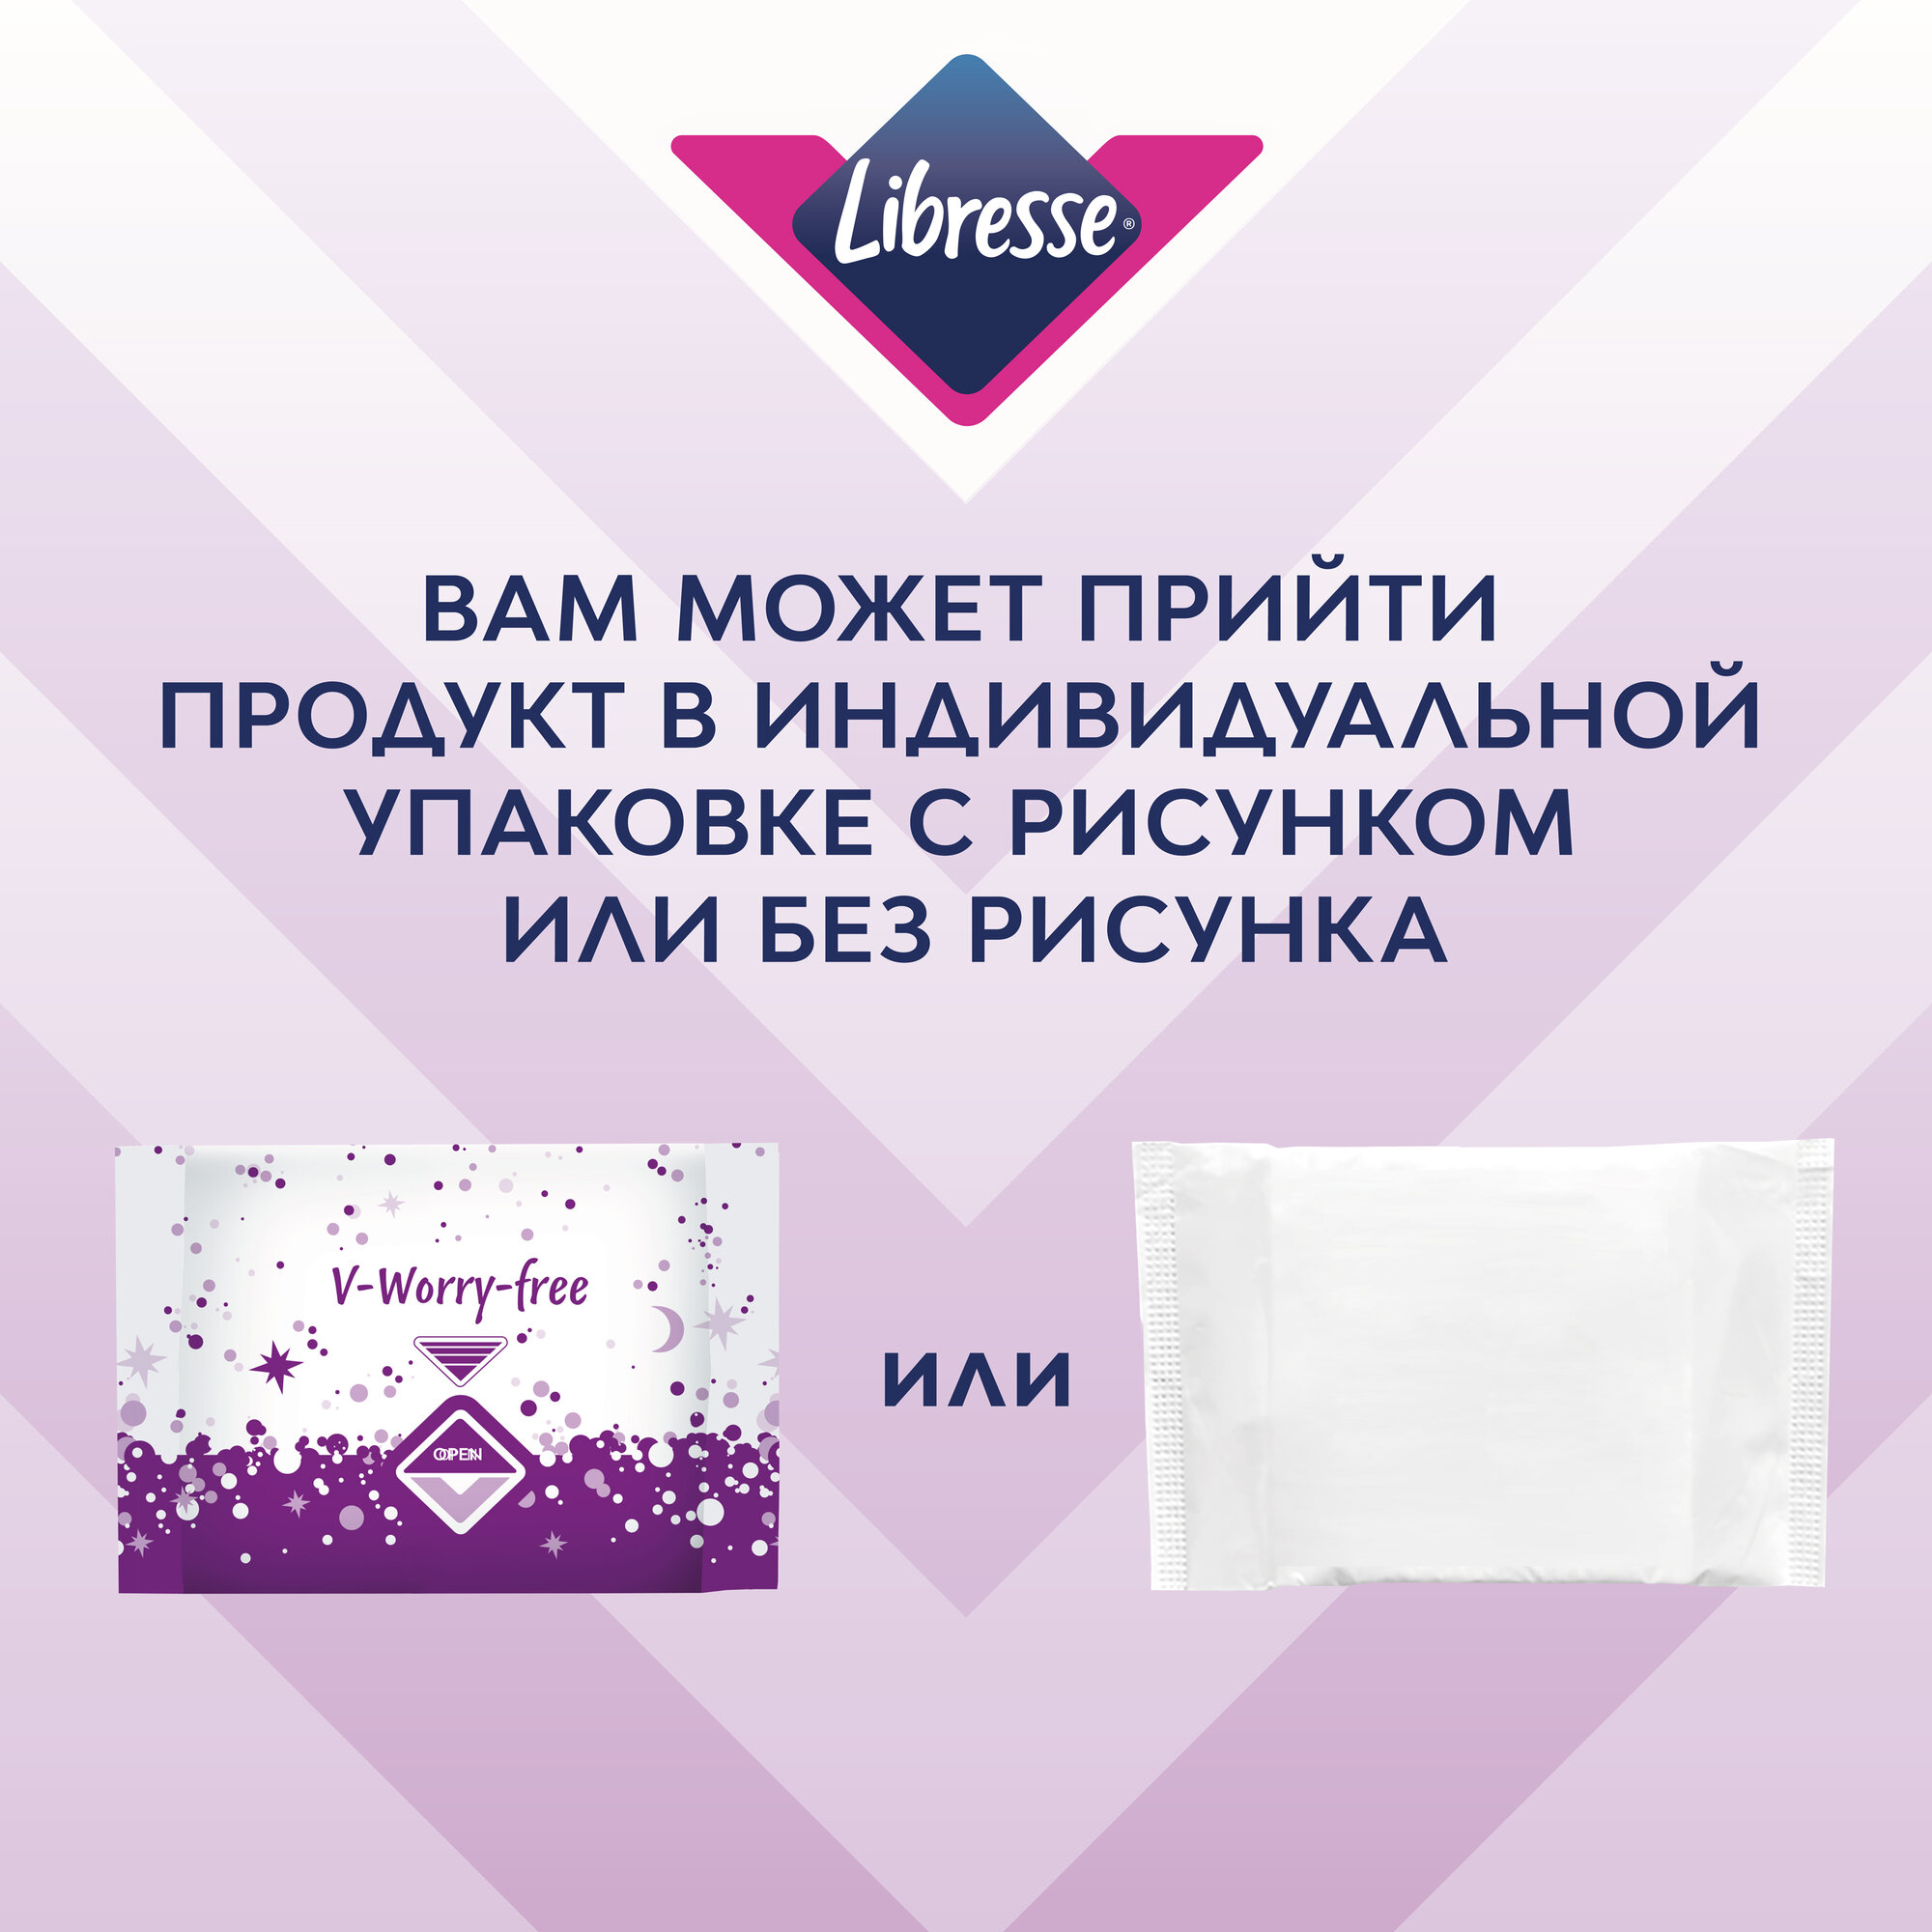 Libresse прокладки Ultra ночные с мягкой поверхностью, 6 капель, 16 шт., фиолетoвый